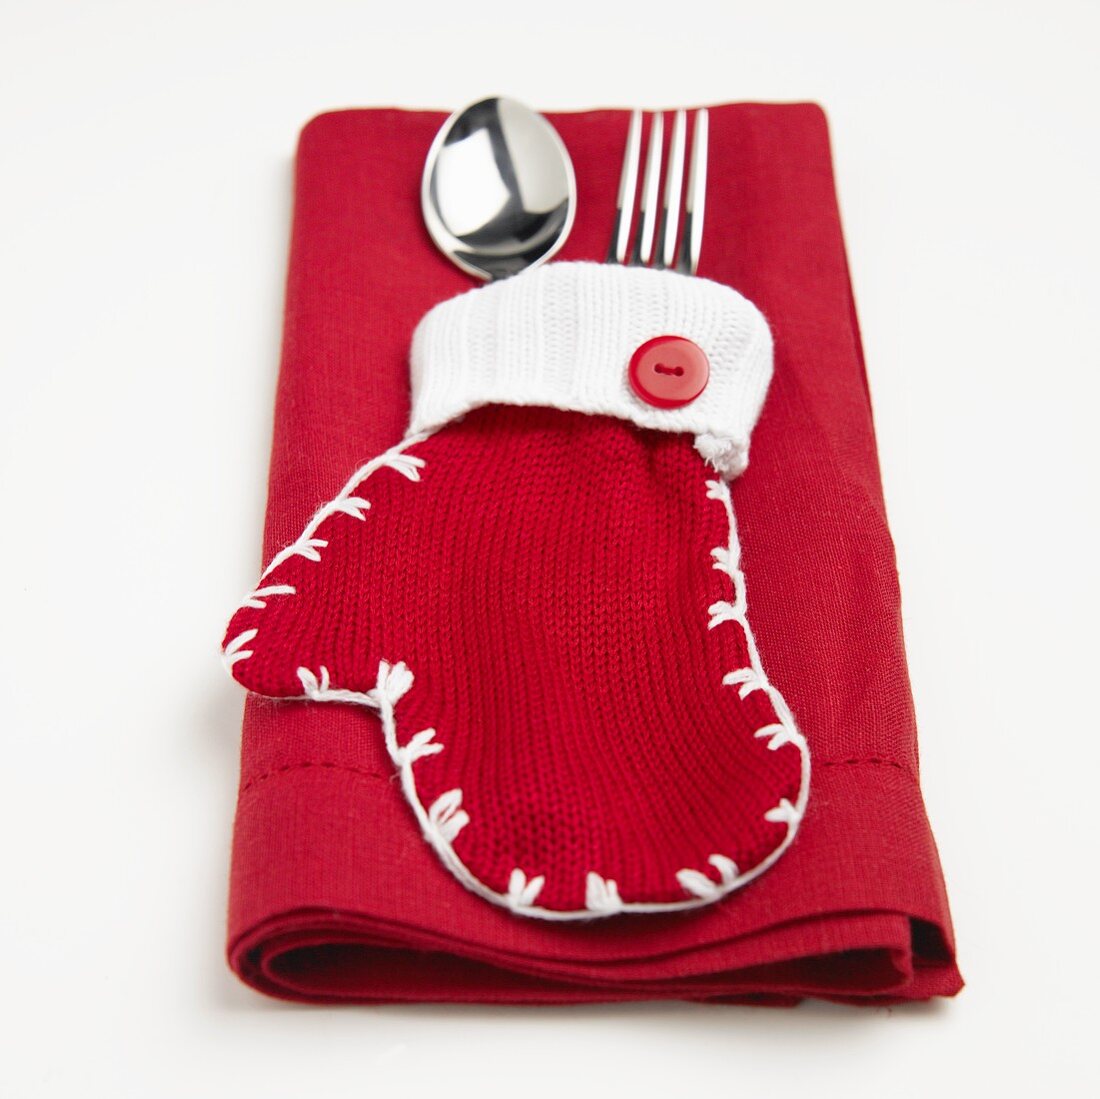 Roter Handschuh mit Silberbesteck auf roter Serviette